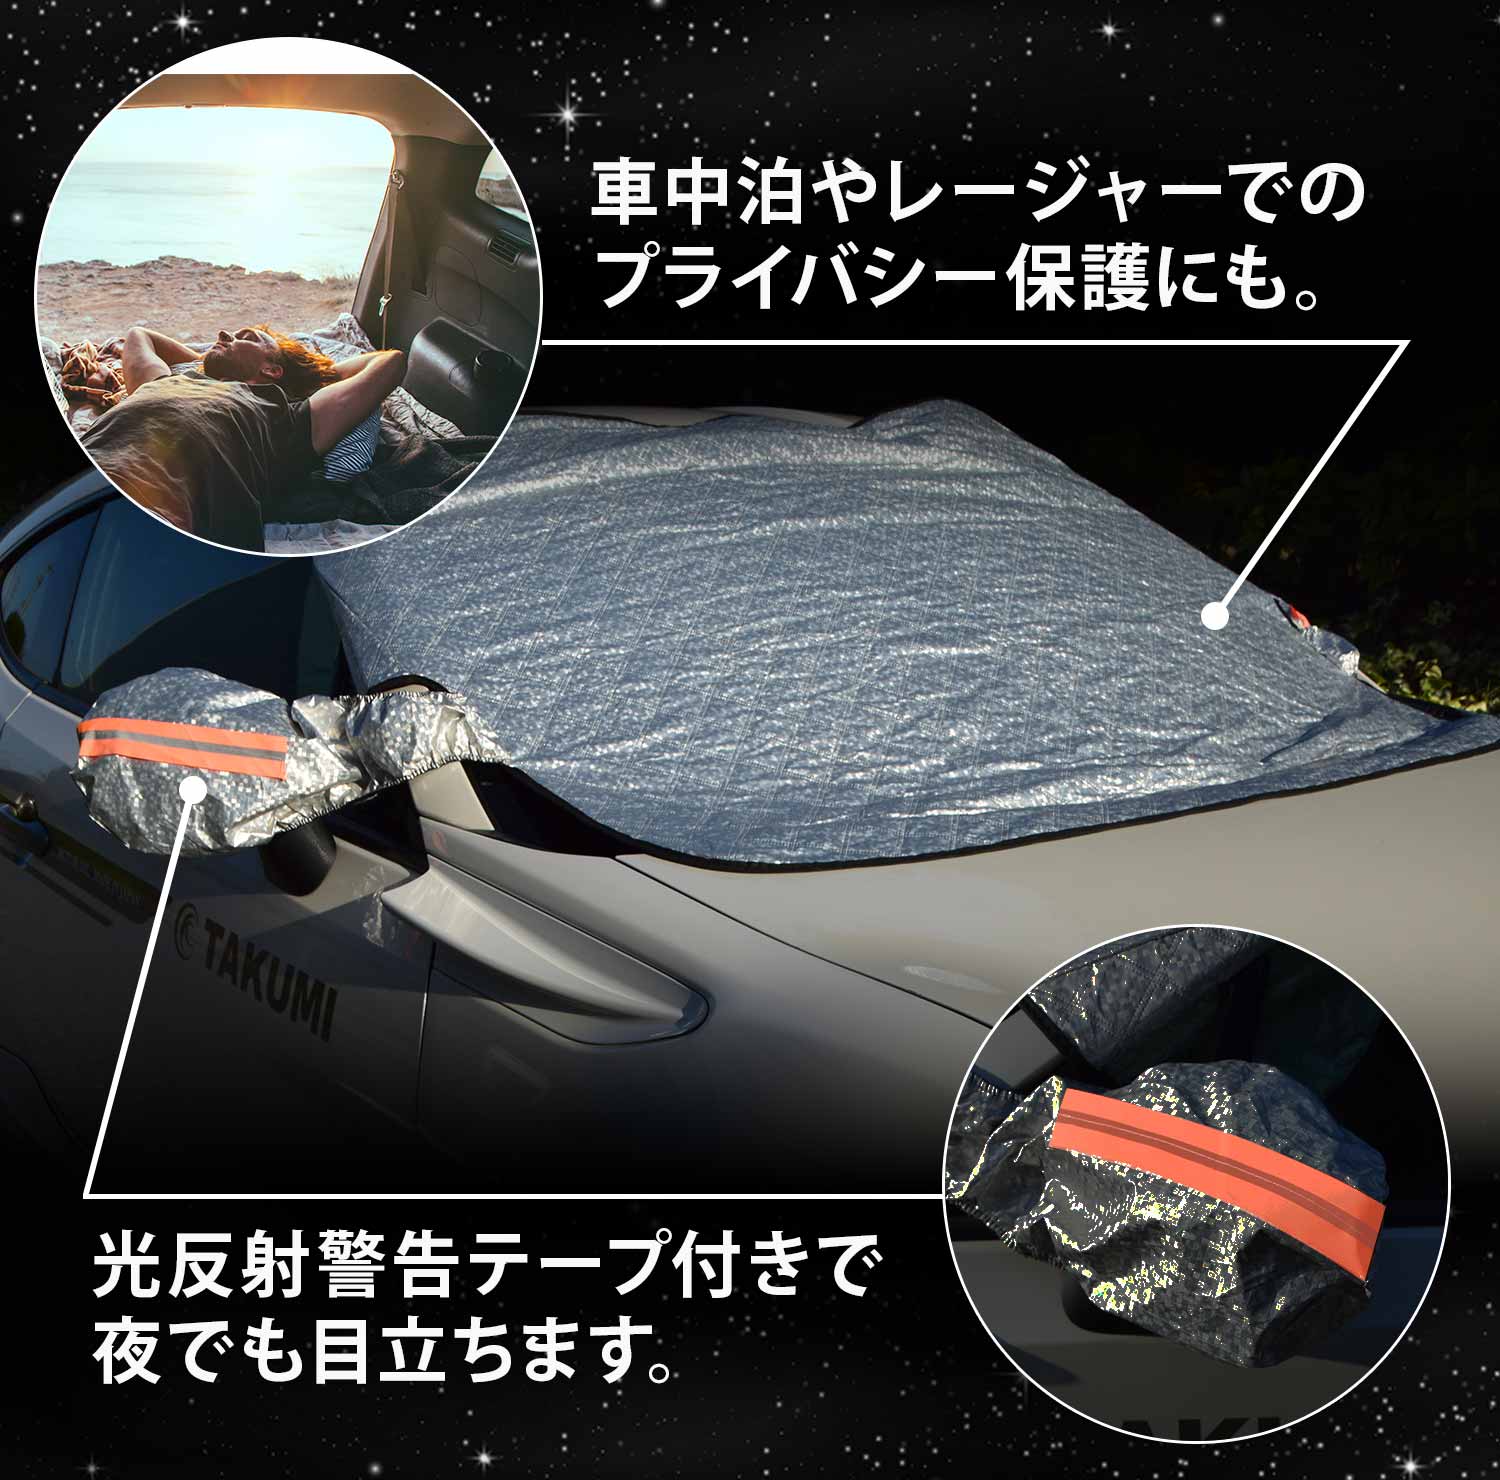 フロントガラス保護カバー。ミラーカバー一体型。車中泊やプライバシー保護にも使用可能。光反射テープ付きで夜でも目立ちます。